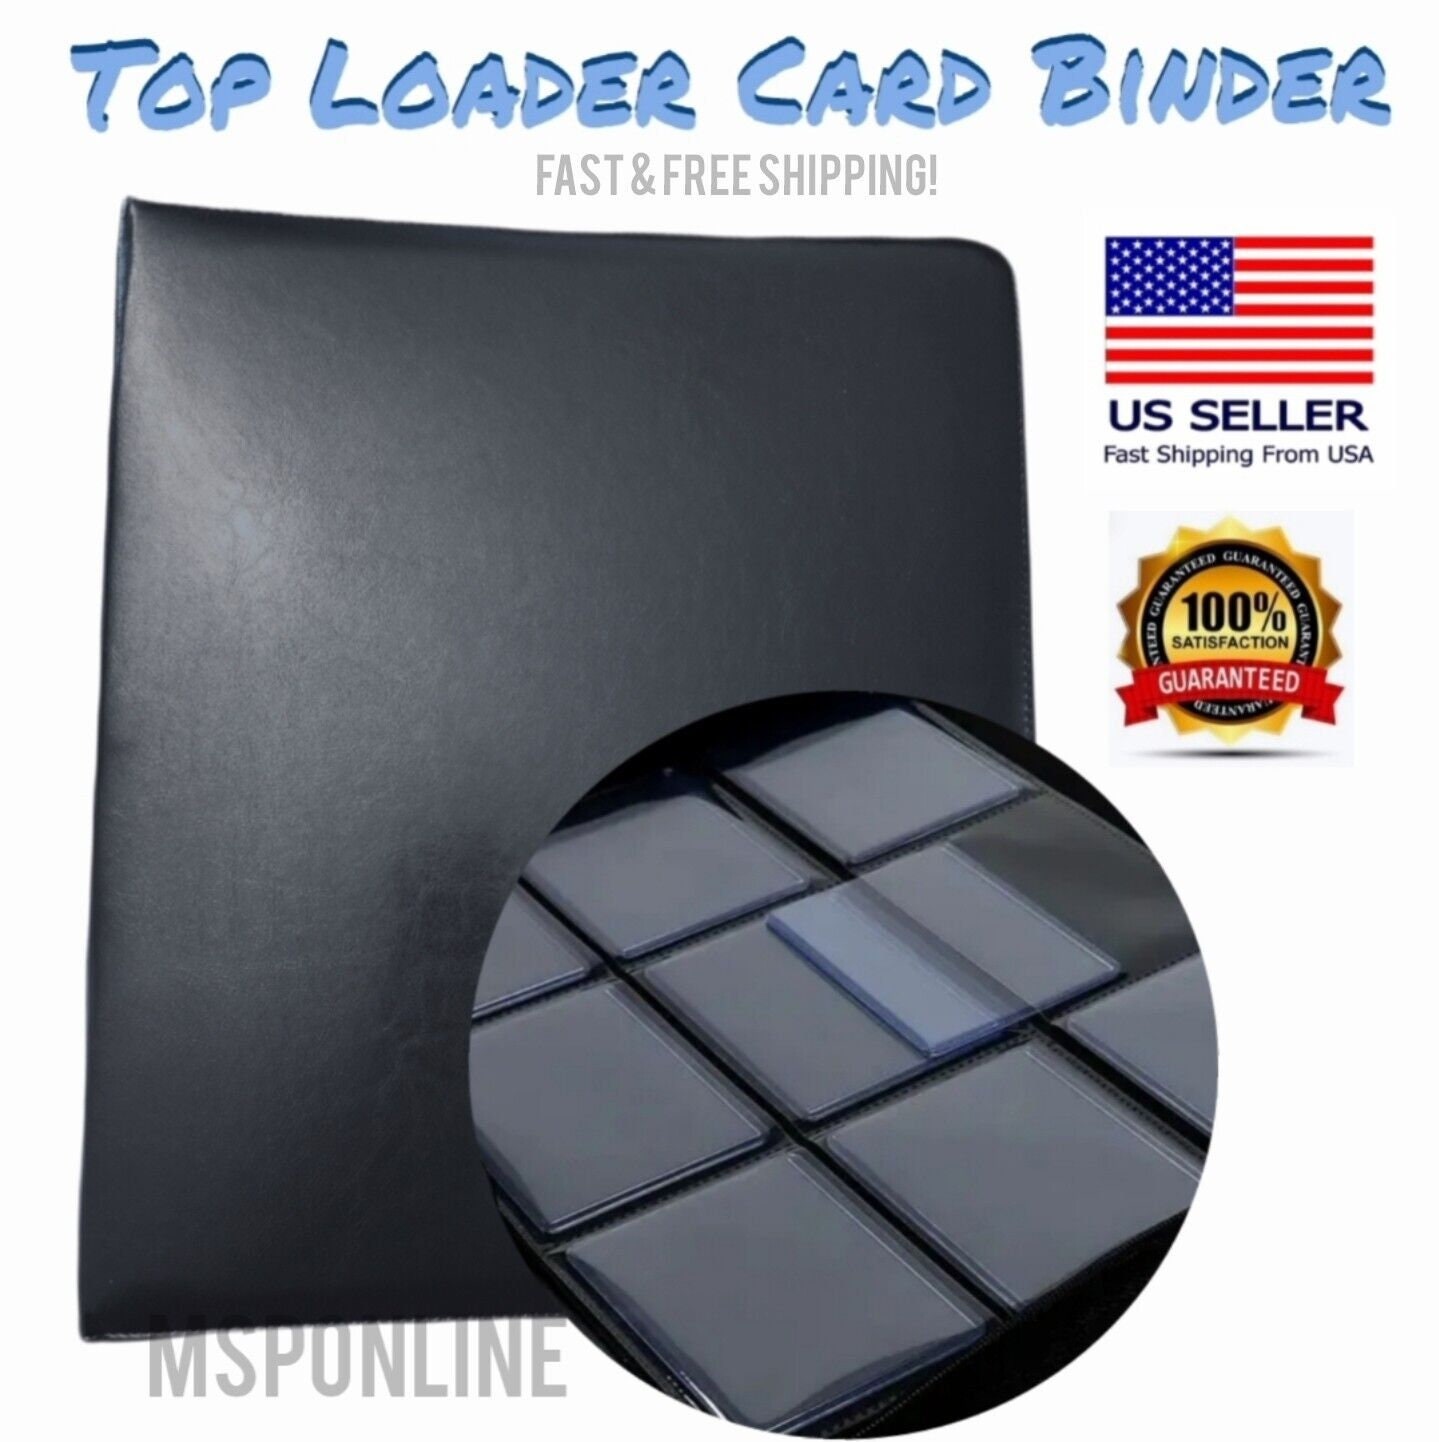 Top Loader Binder Pages 